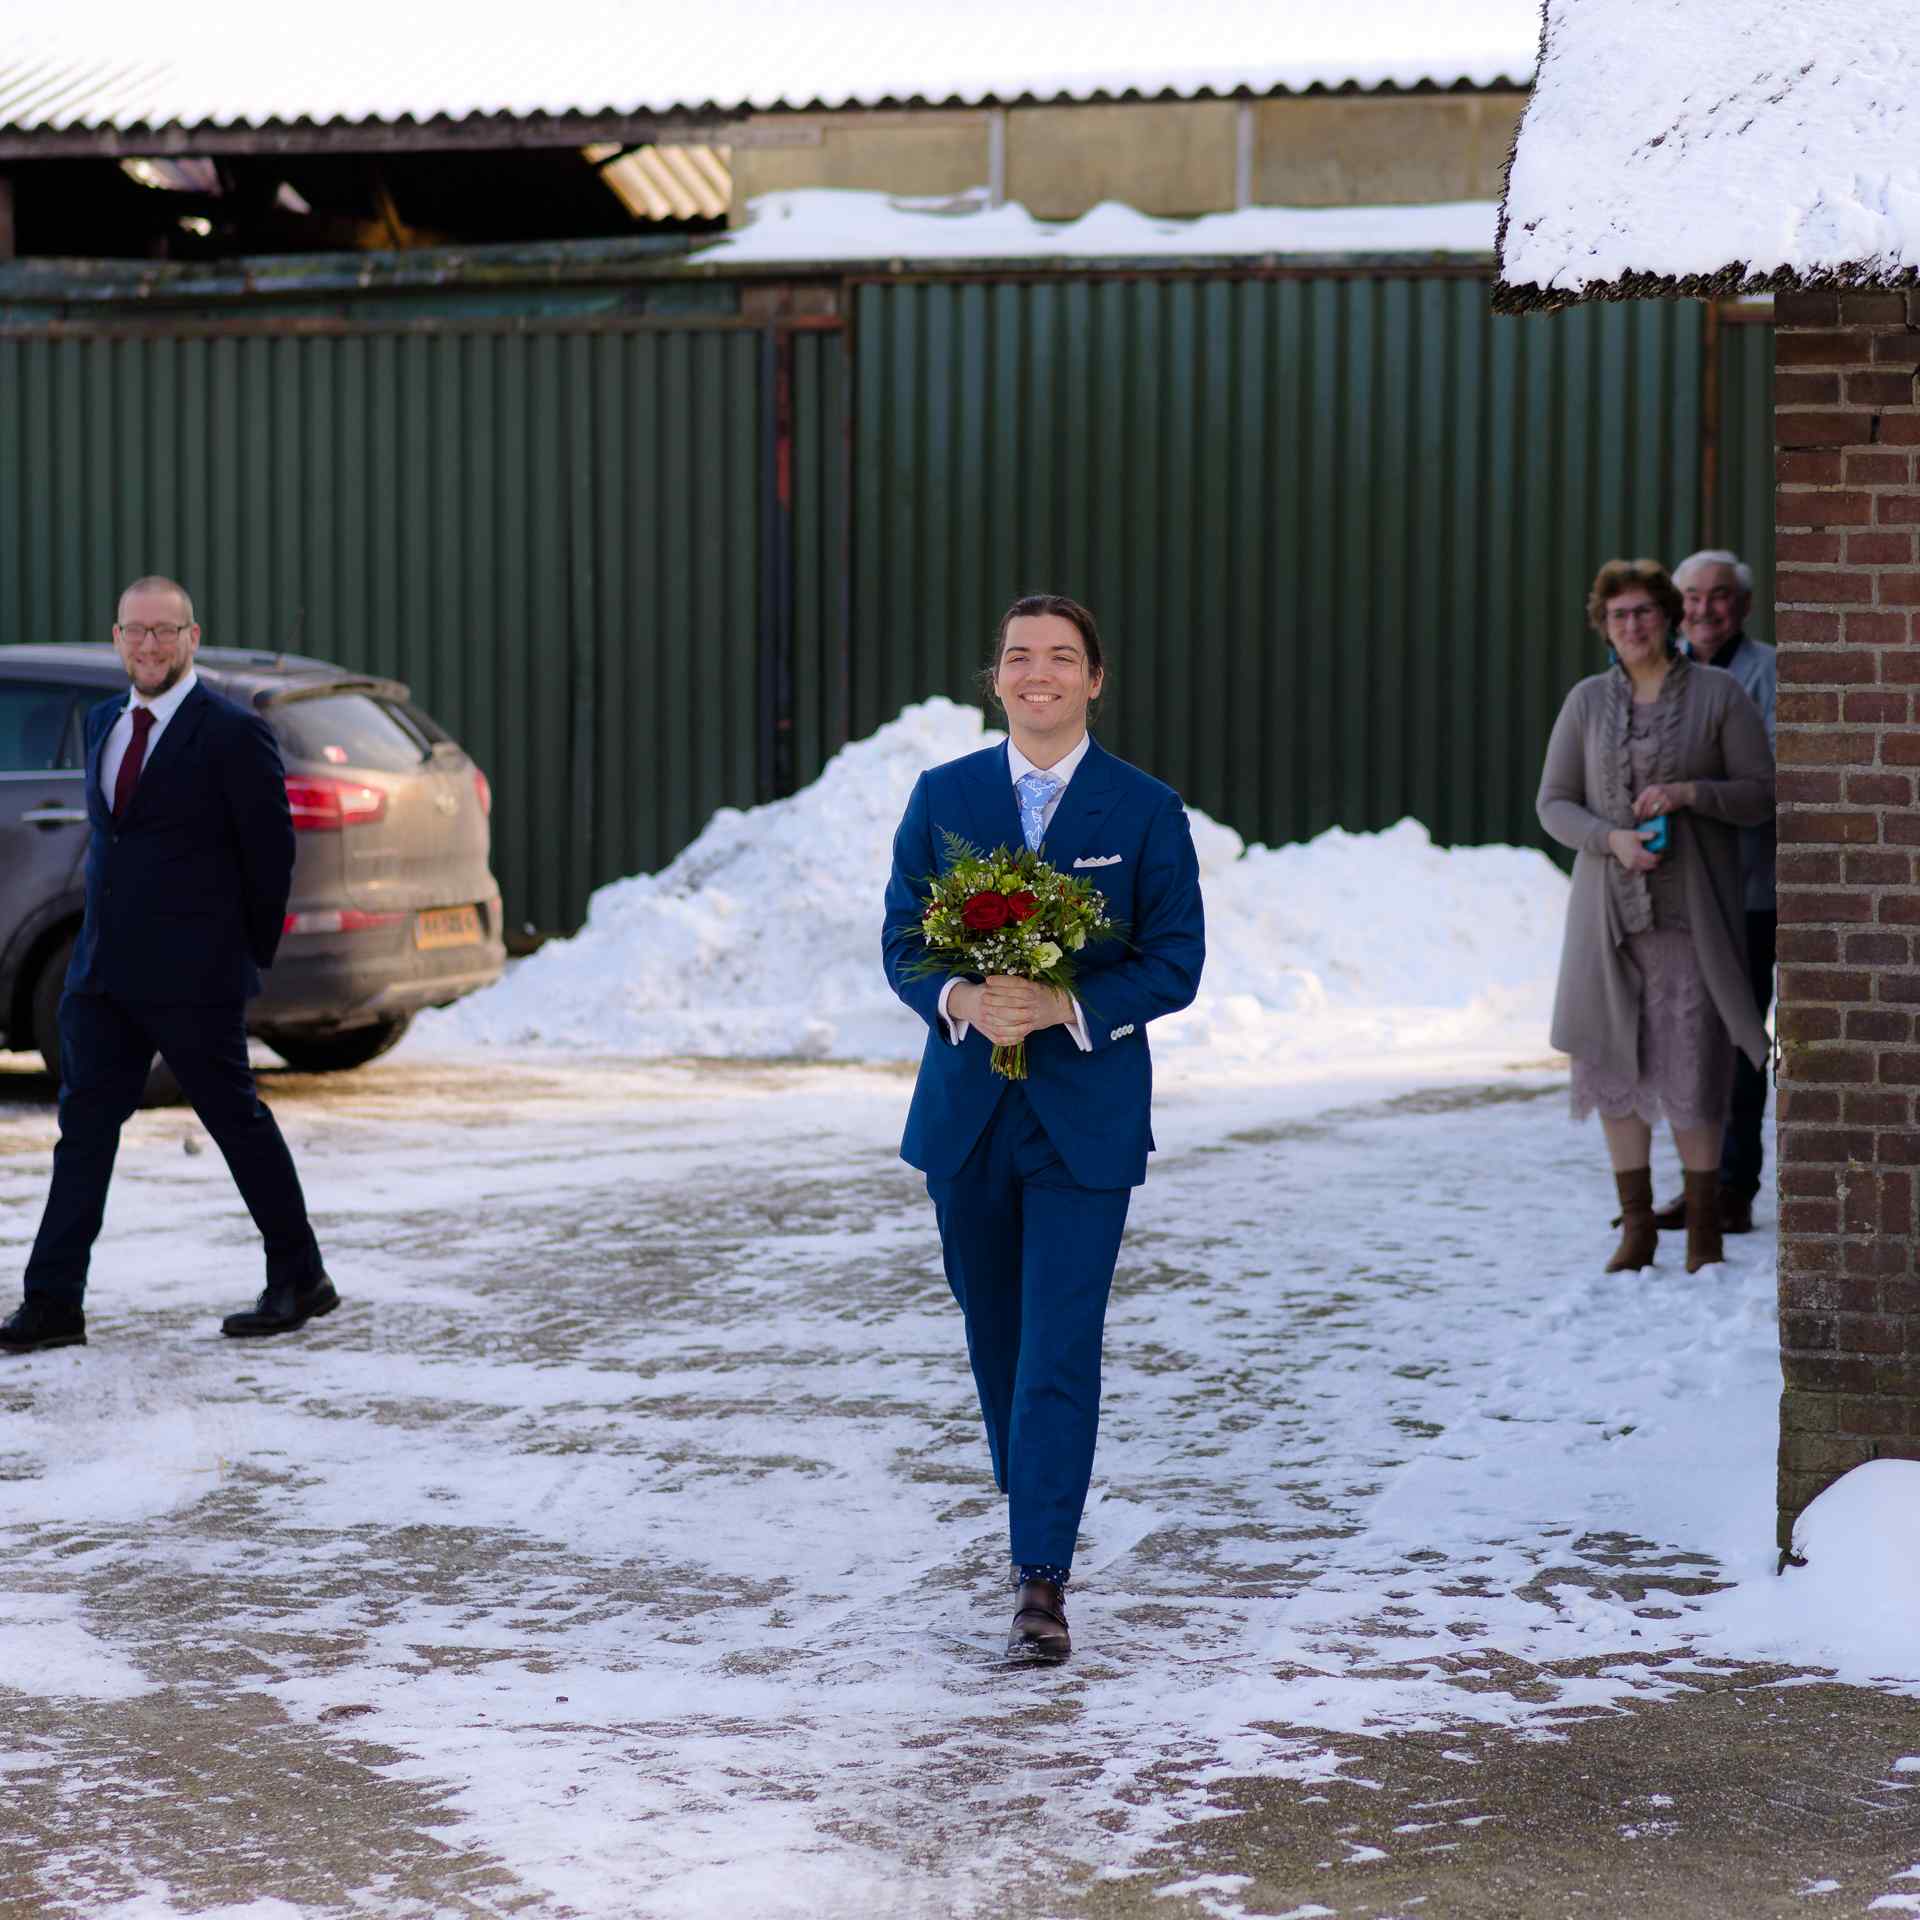 Bruiloft Kasteel Ter Horst Loenen in winter met sneeuw